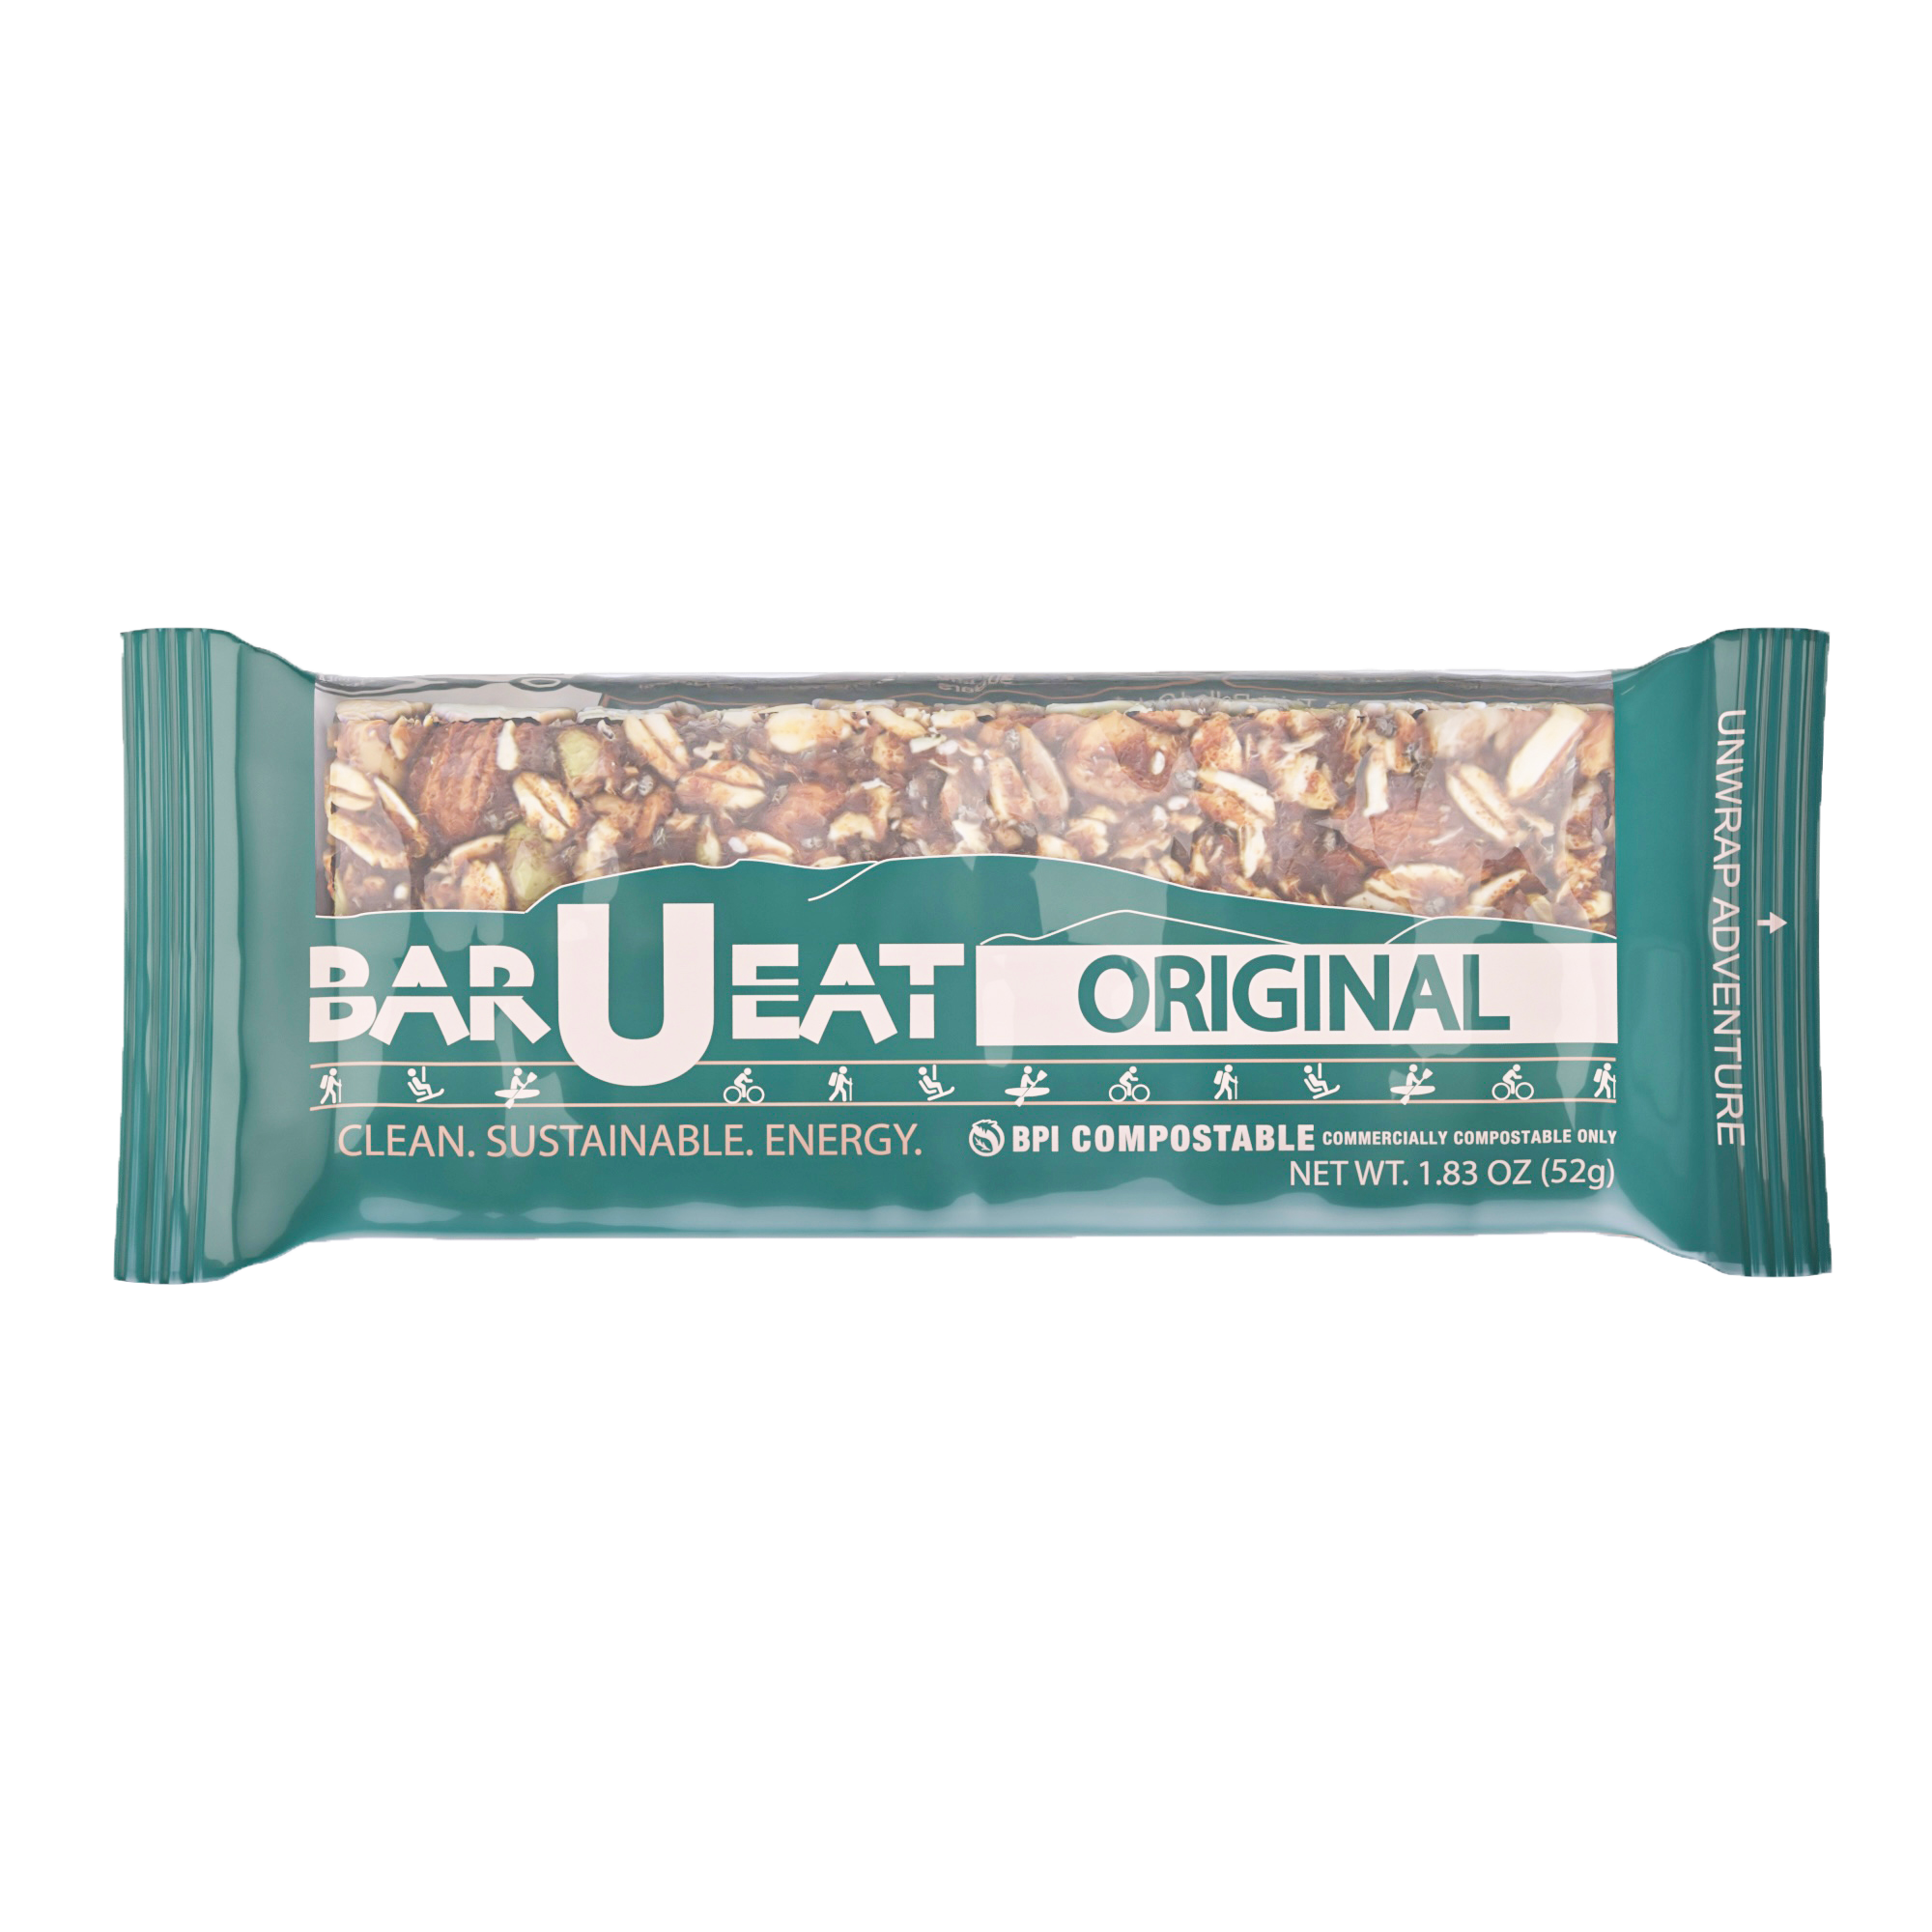 Original granola bar sealed